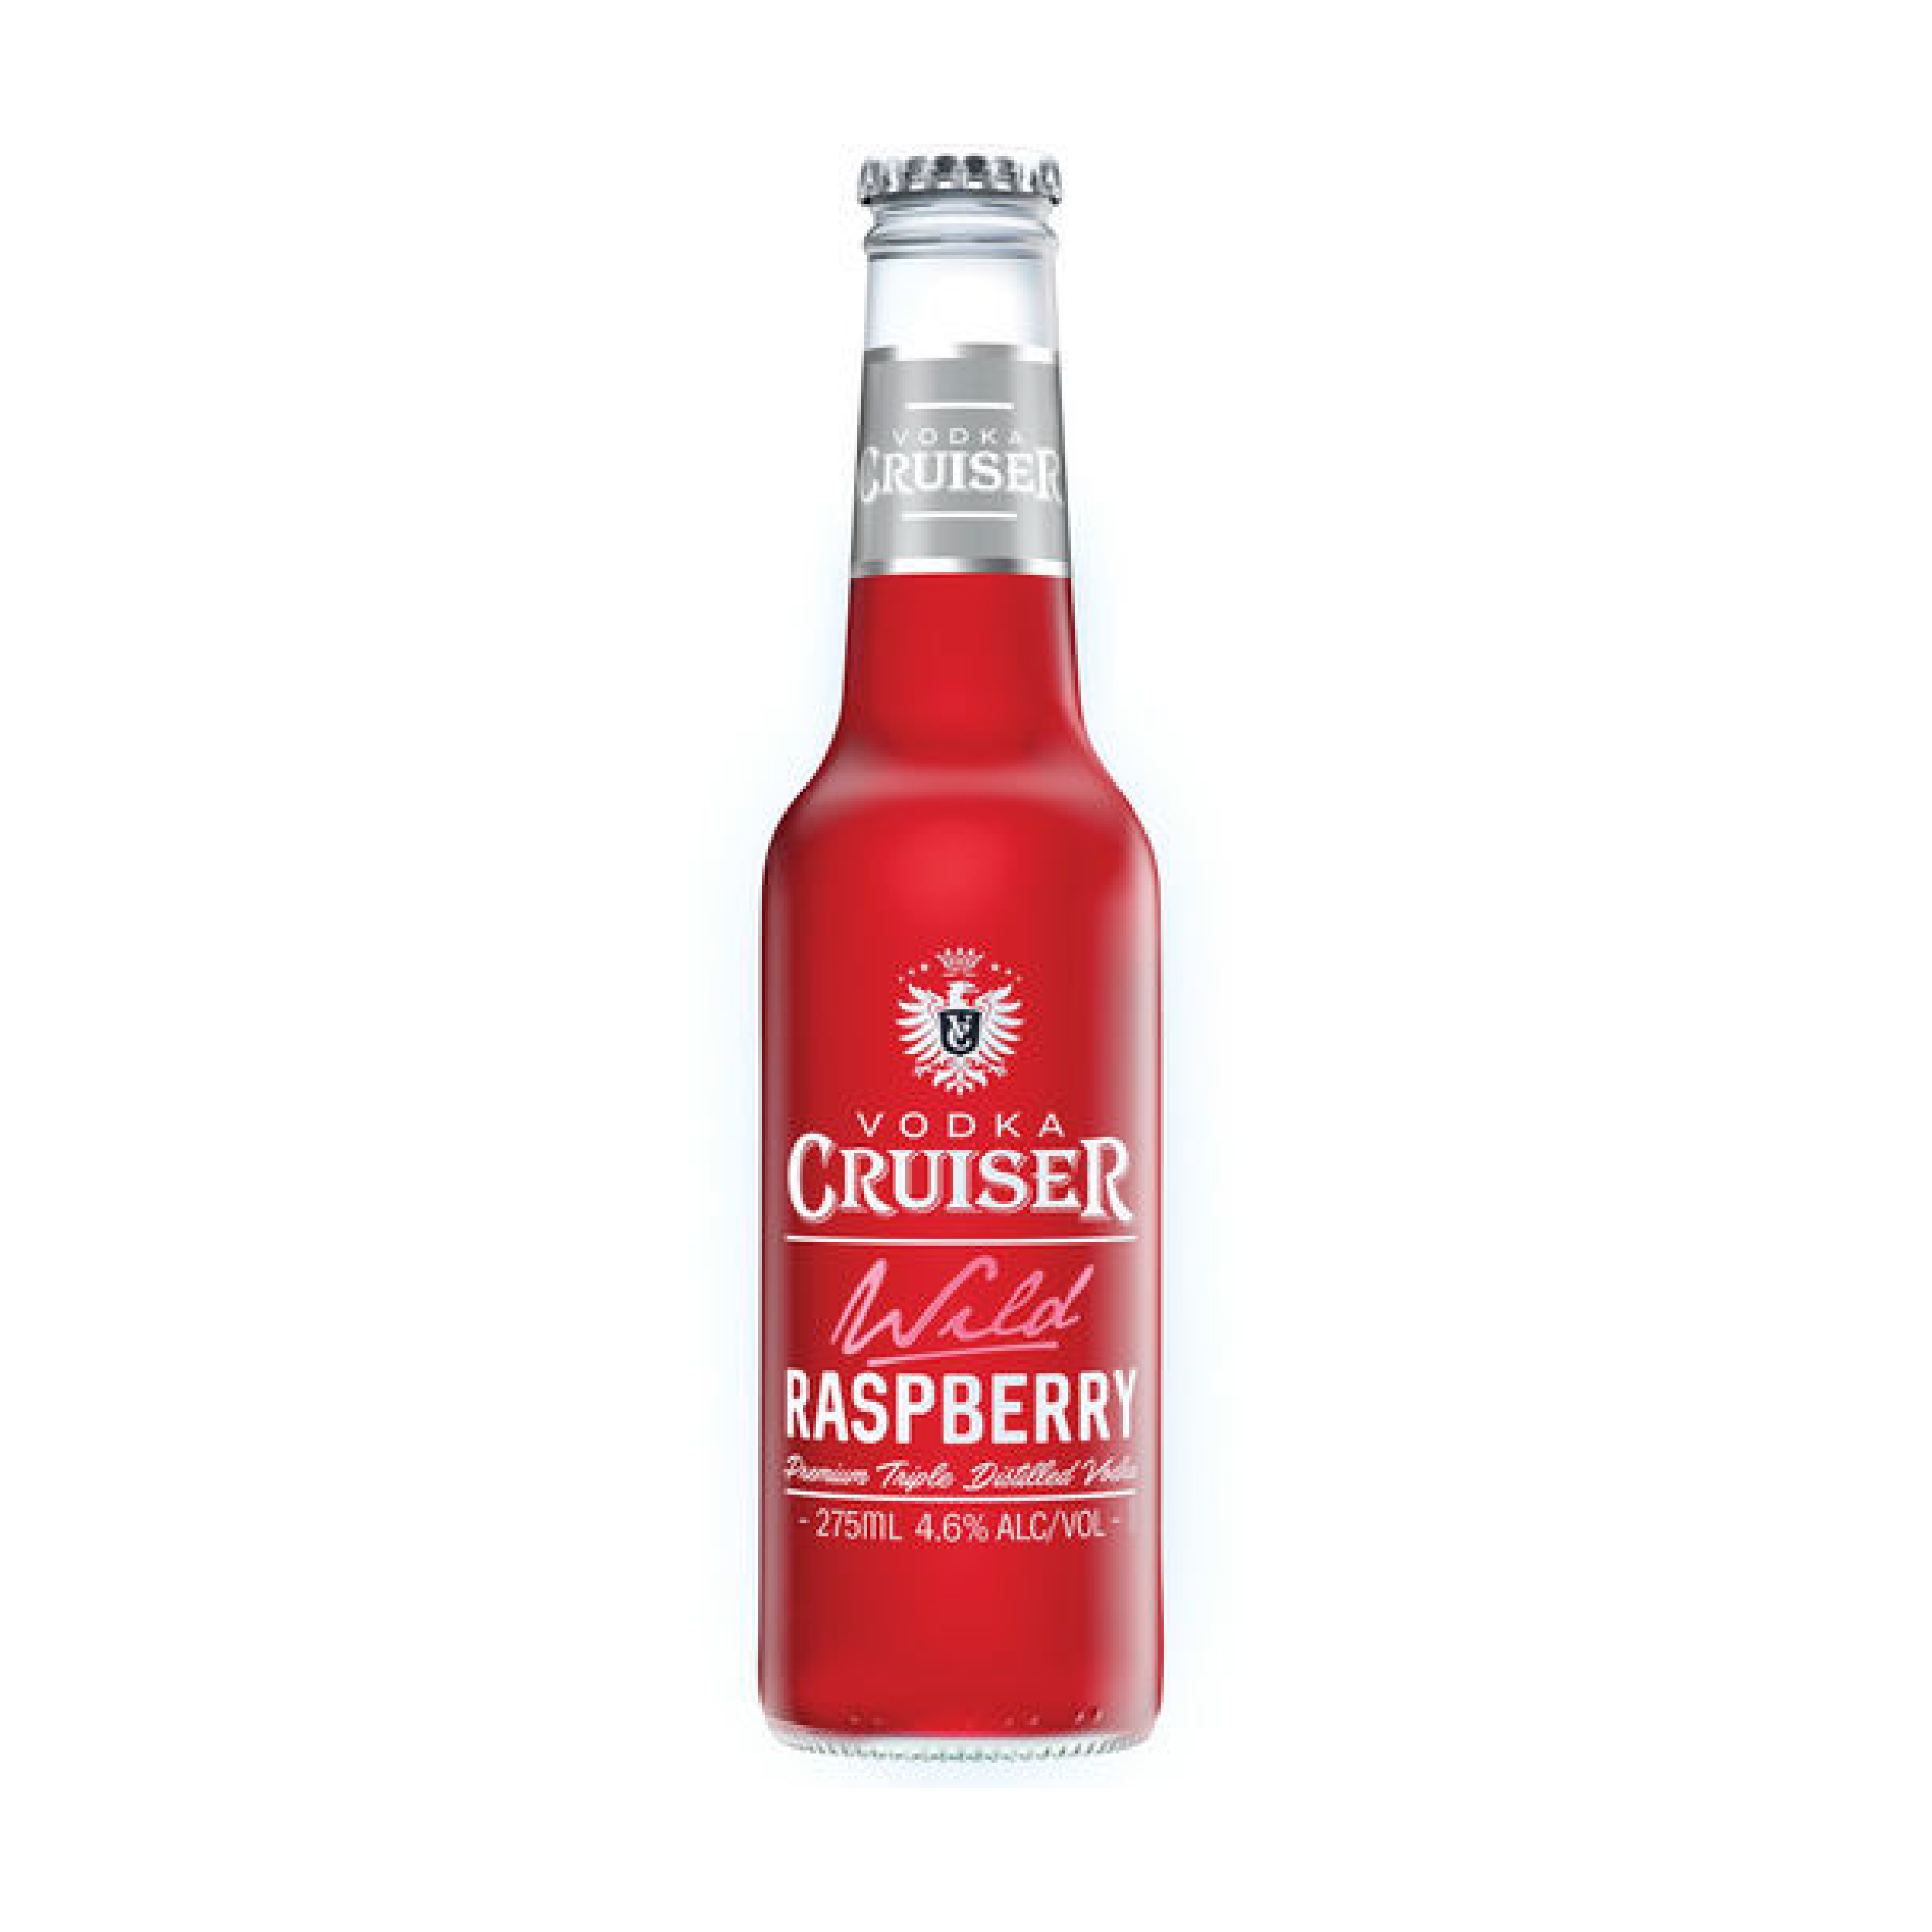 Vodka Cruiser Rasberry 275ml - S Liquor